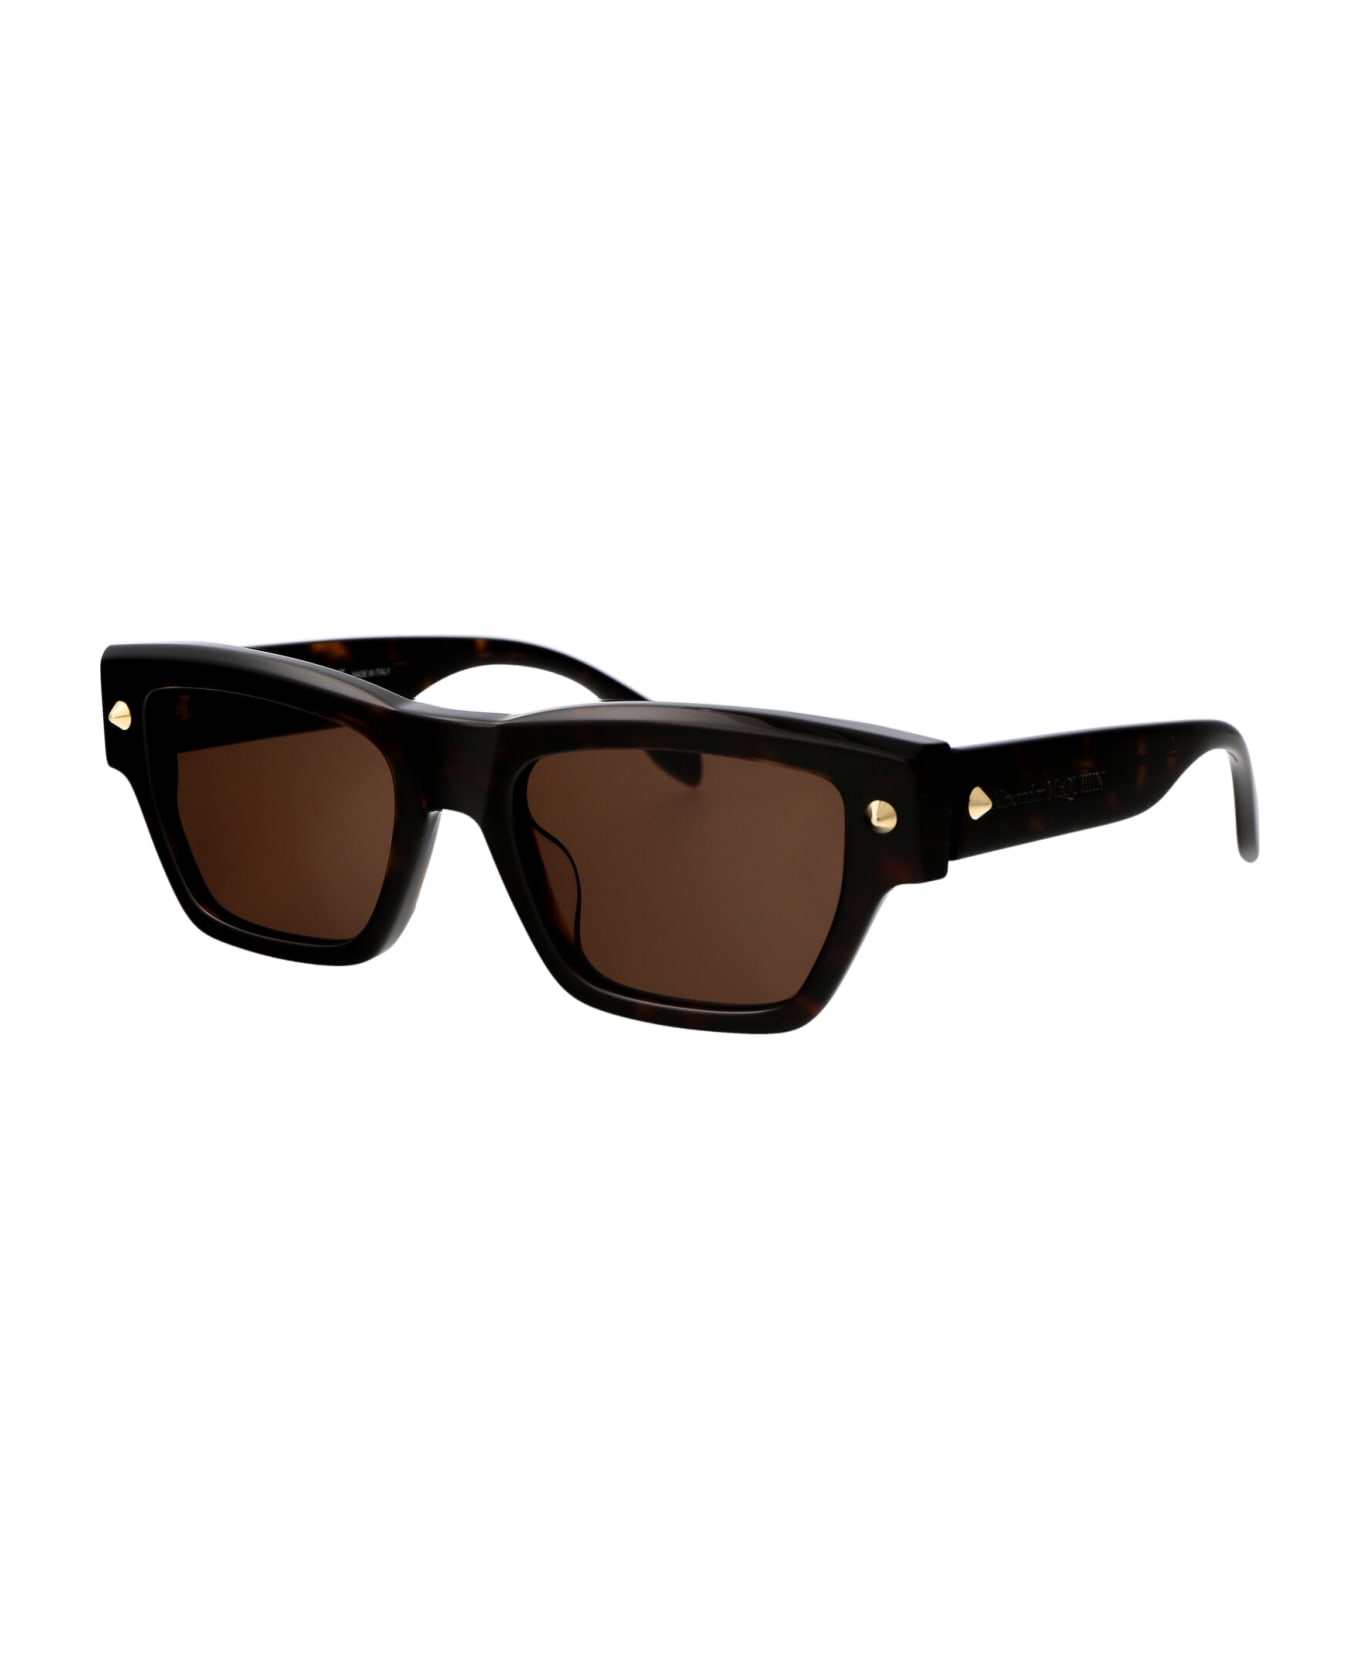 Alexander McQueen Eyewear Am0409s Sunglasses - 002 HAVANA HAVANA BROWN